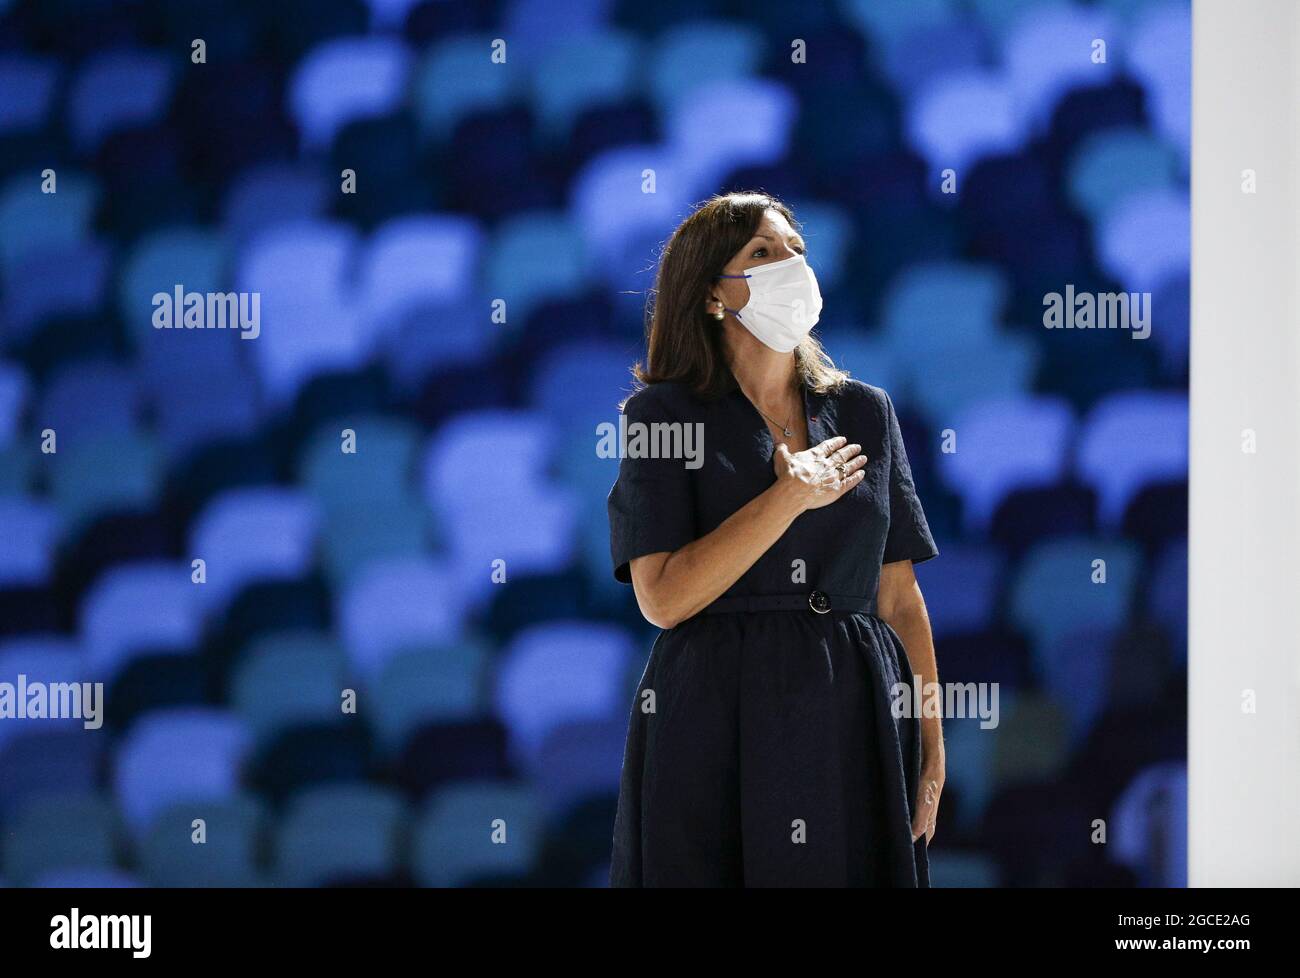 Tokyo, Japon. 8 août 2021. Anne Hidalgo, mairesse de Paris, assiste à la cérémonie de clôture des Jeux Olympiques de Tokyo 2020 à Tokyo, au Japon, le 8 août 2021. Crédit : Li Ming/Xinhua/Alay Live News Banque D'Images